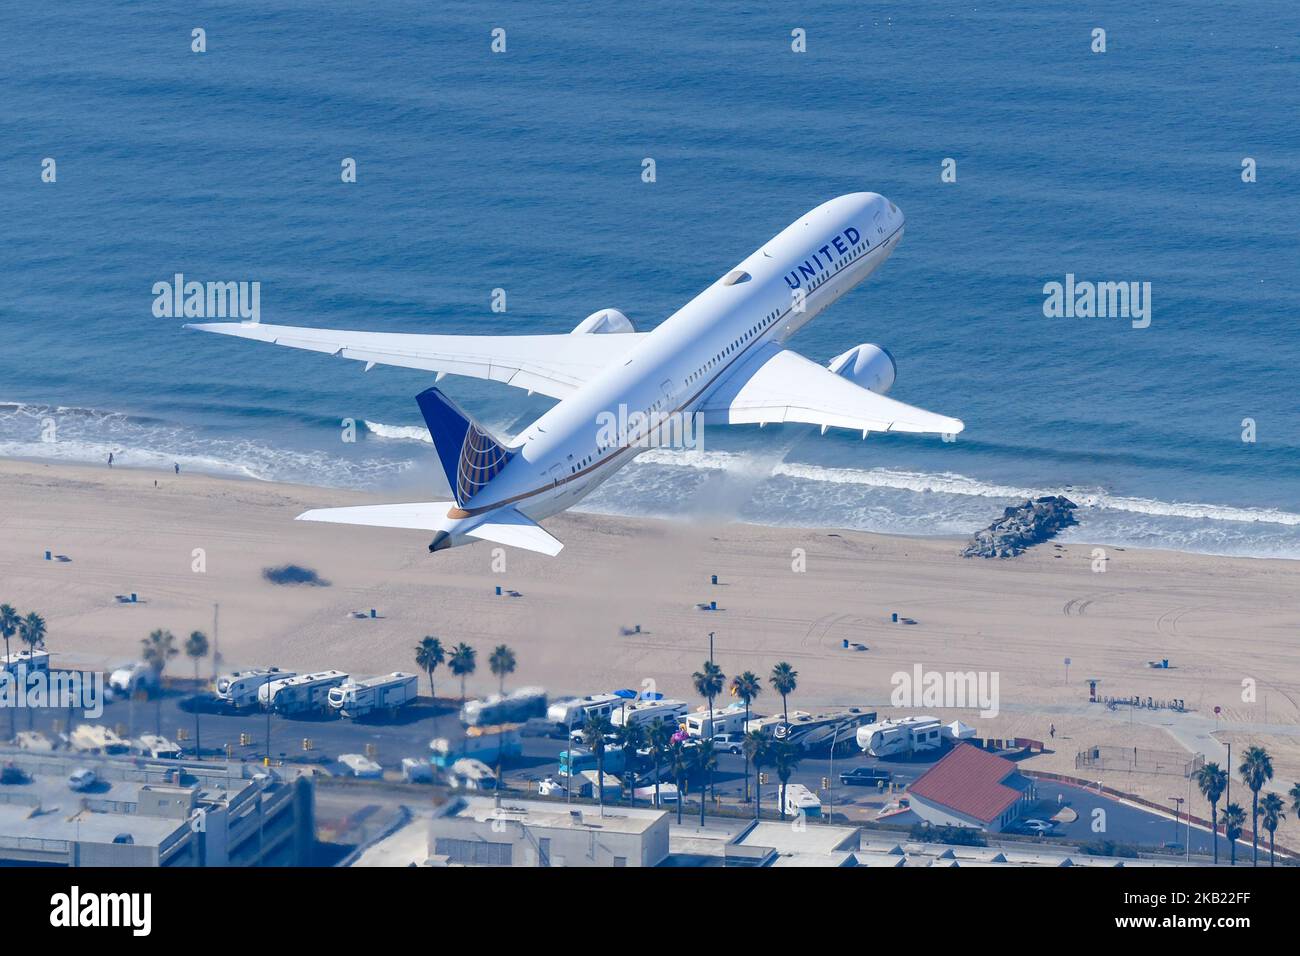 United Airlines Boeing 787-Flugzeuge starten vom Flughafen Los Angeles. Flugzeug N26967 von United Airlines fliegt nach dem Start. 787-8 Dreamliner. Stockfoto